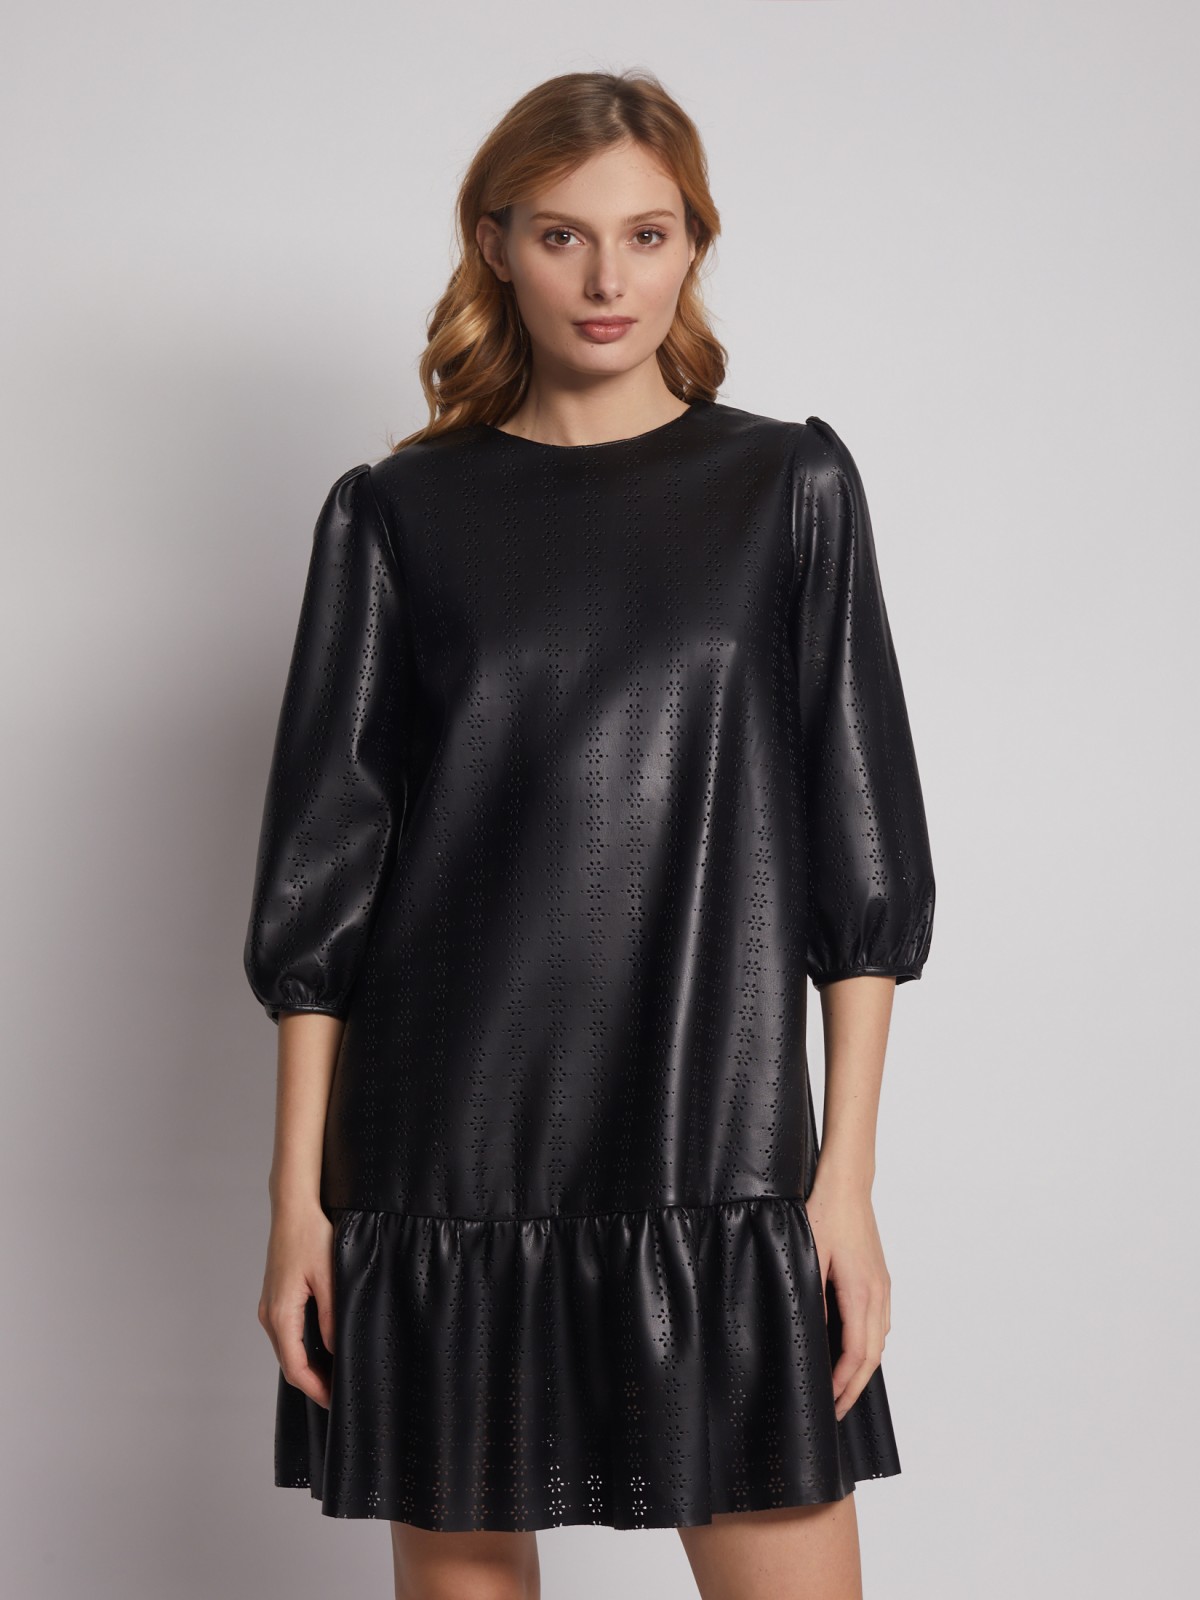 Платье из экокожи с перфорированным узором zolla 222428159131, цвет черный, размер XS